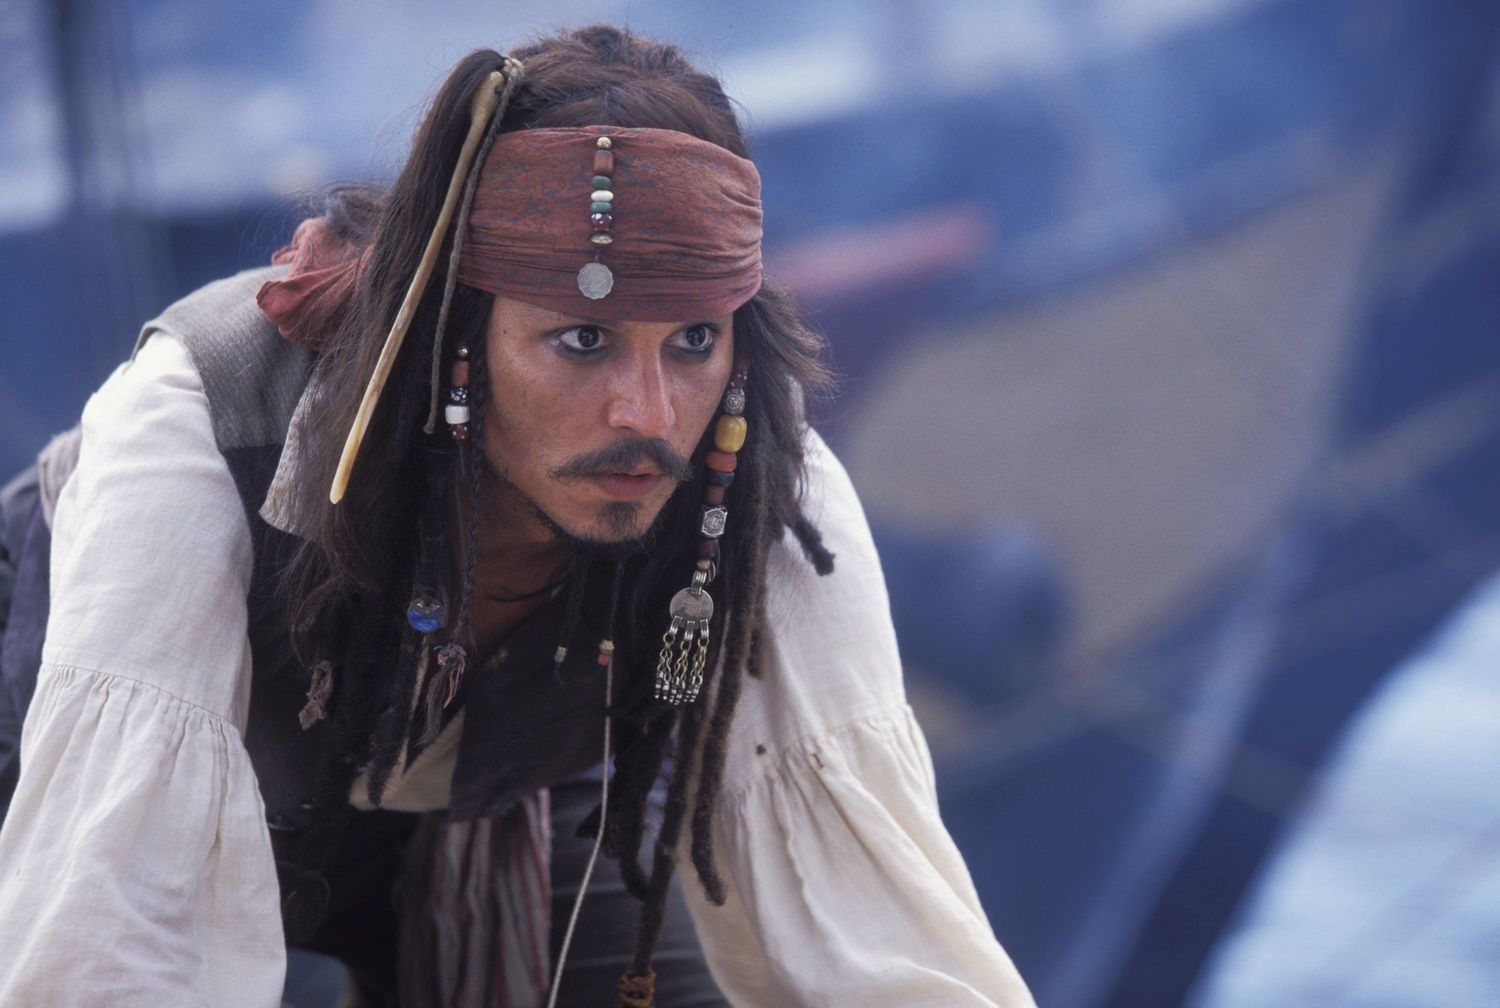 Джонни Депп снимется 6-й части "Пиратов Карибского моря": все, что известно на данный момент - Кино